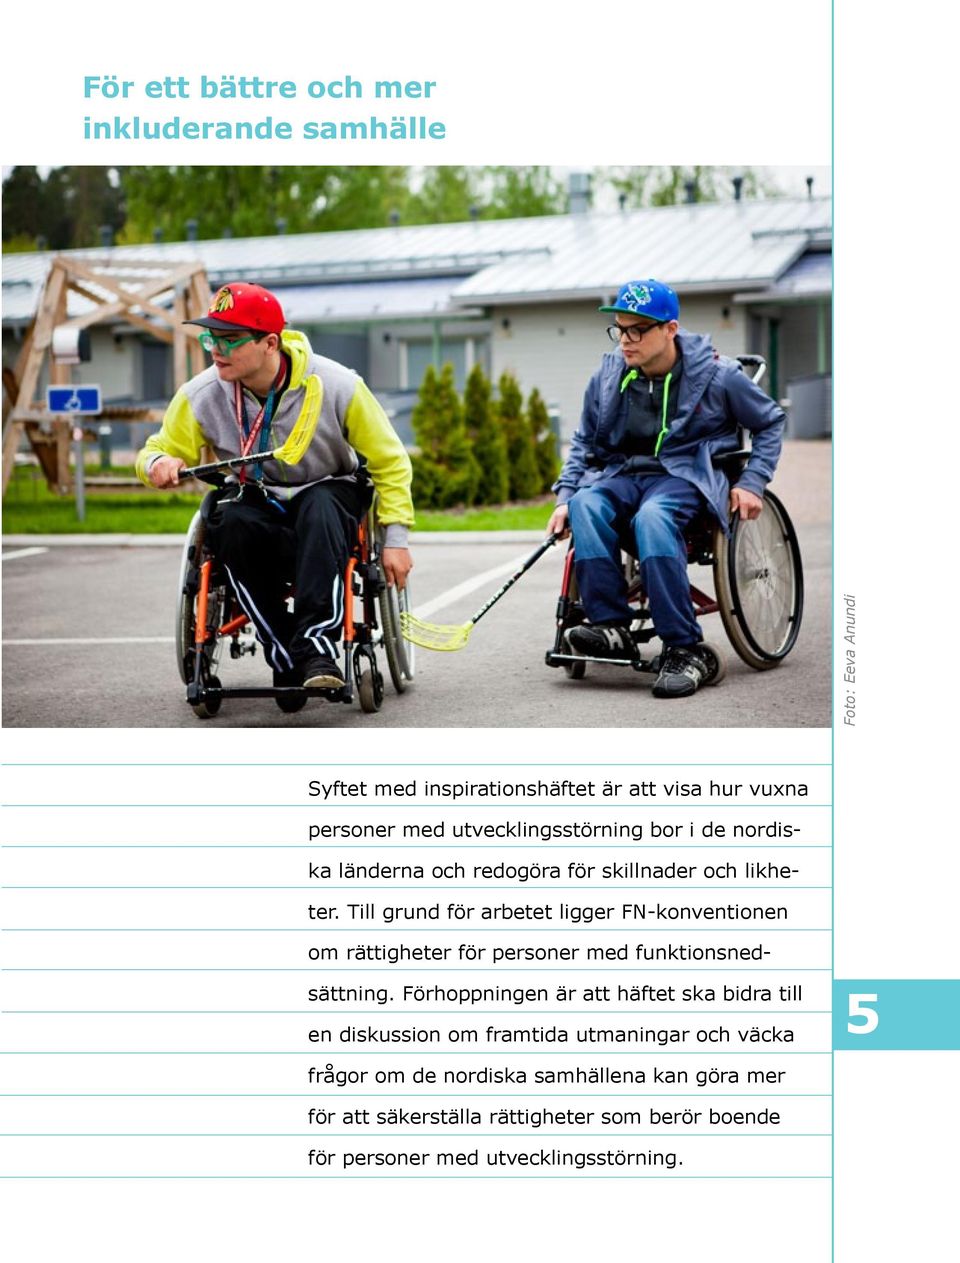 Till grund för arbetet ligger FN-konventionen om rättigheter för personer med funktionsnedsättning.